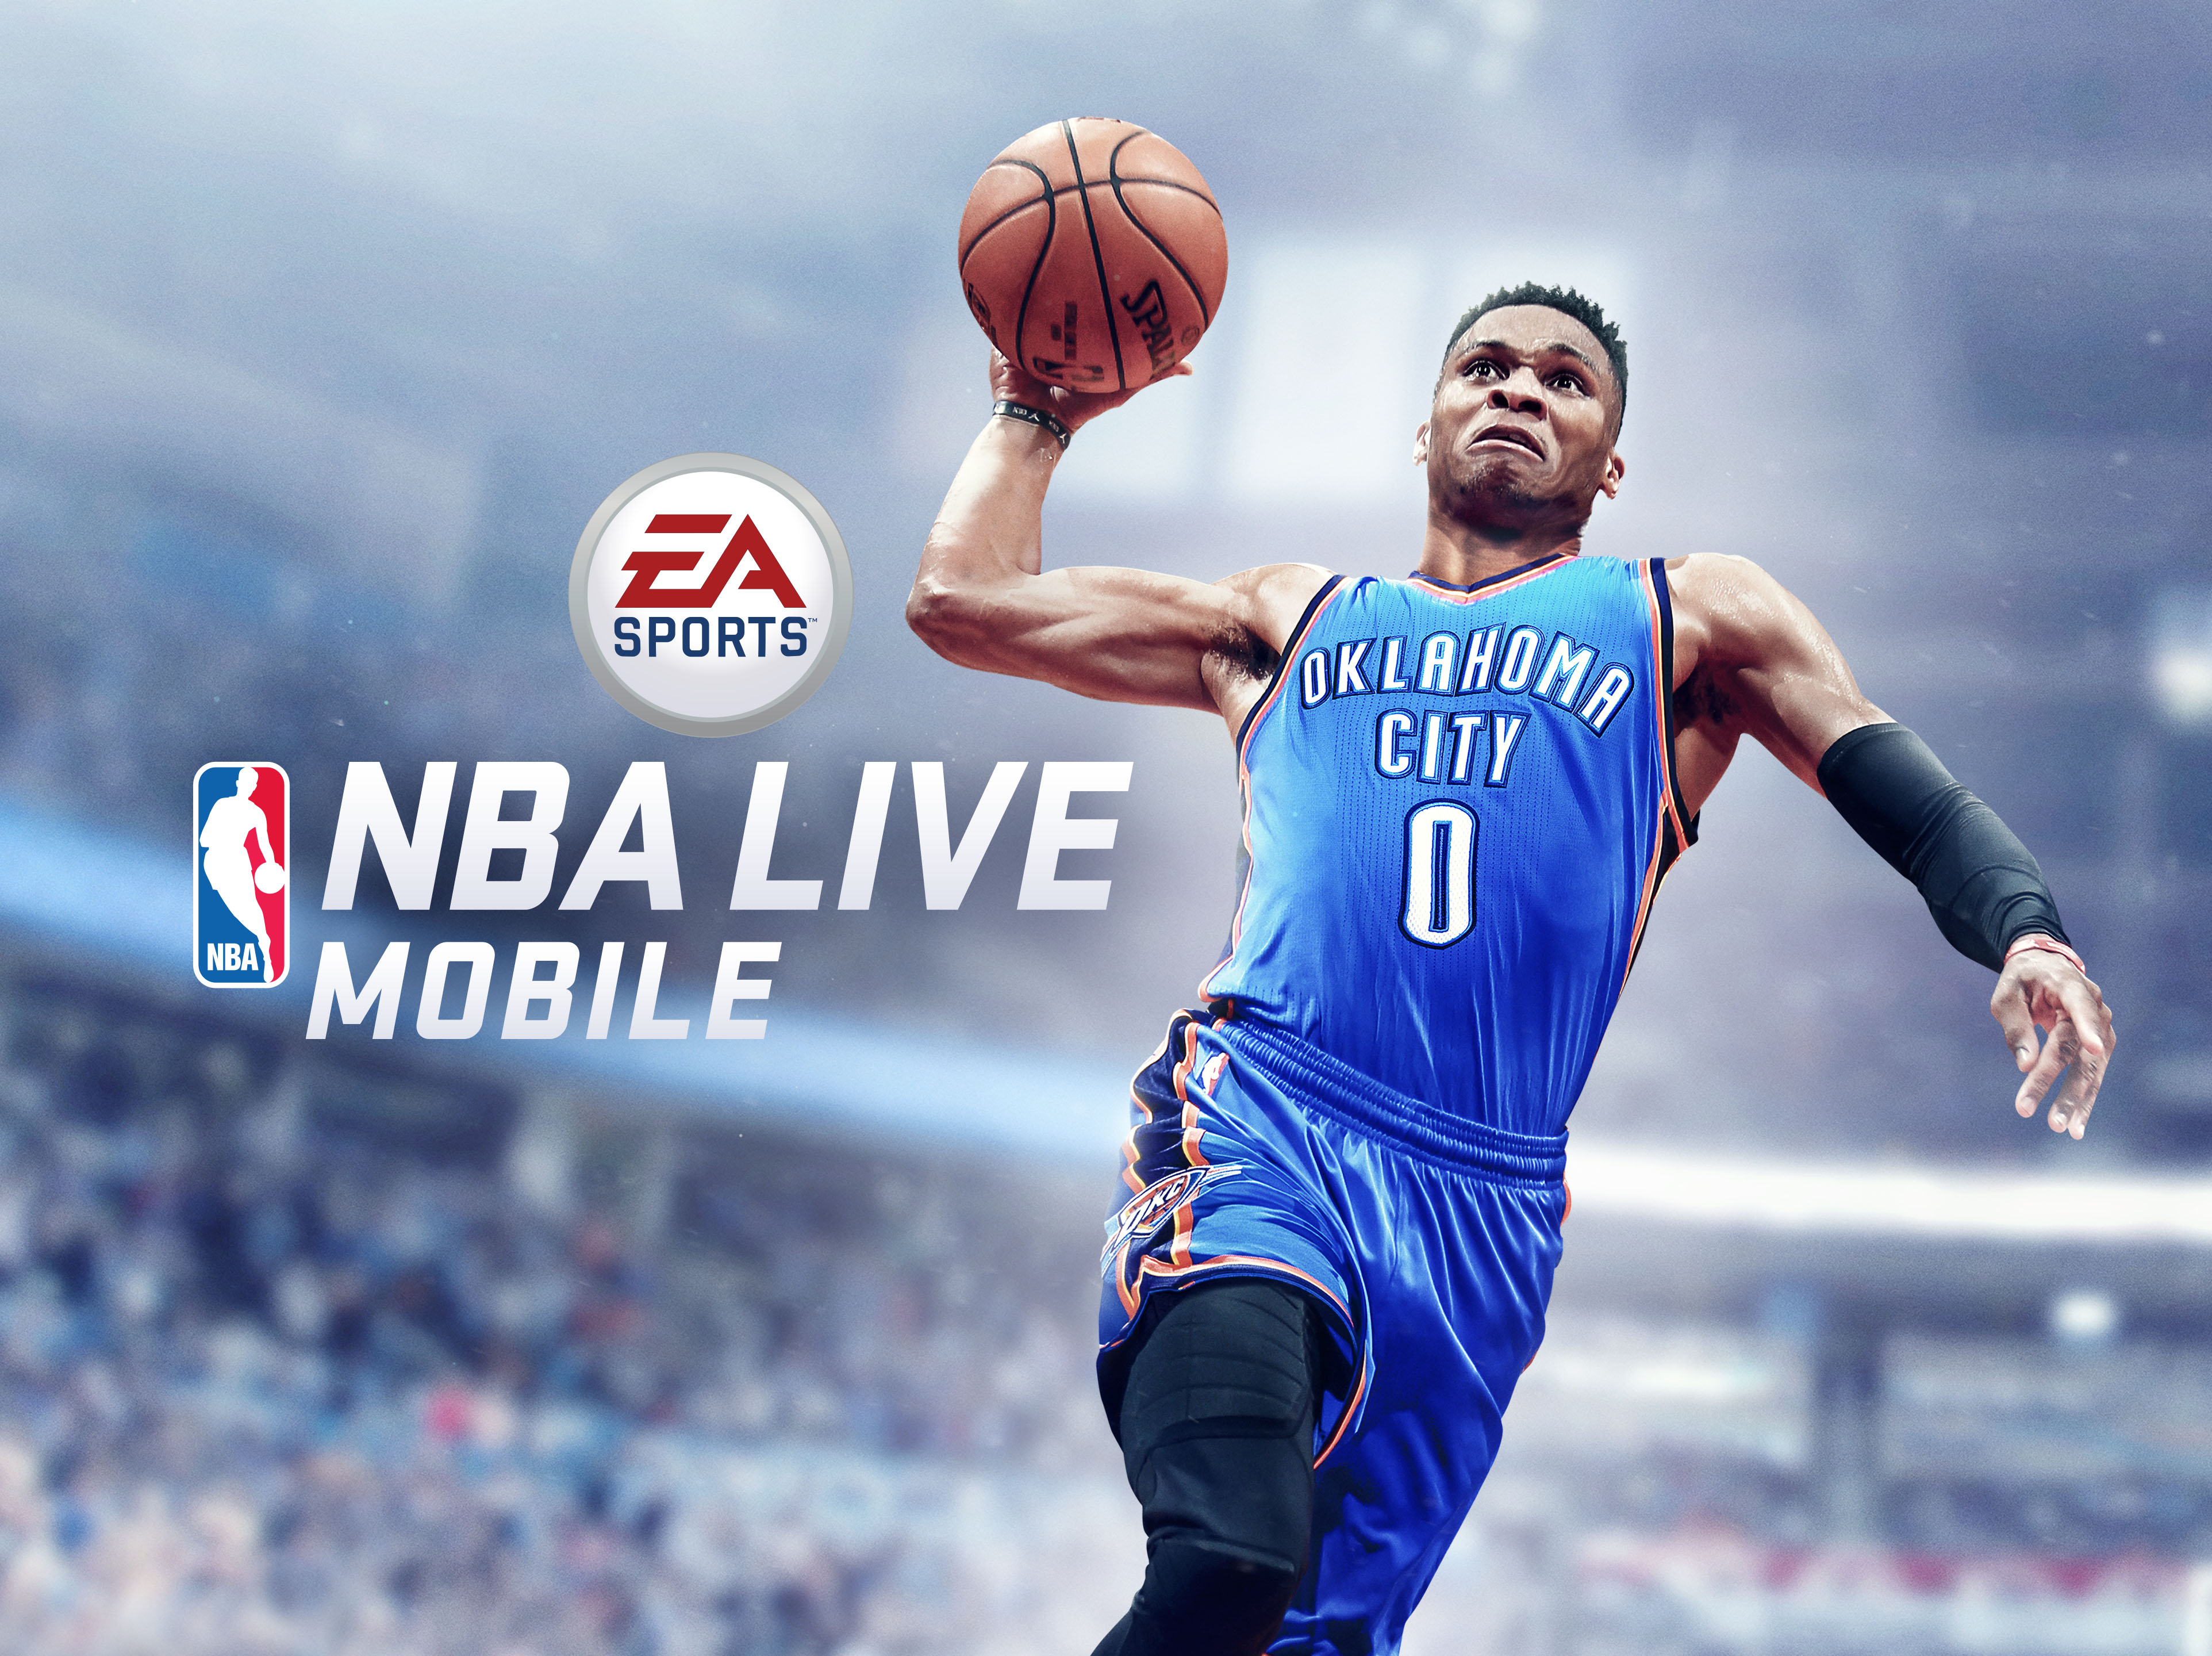 La temporada de básquetbol nunca termina con el lanzamiento de EA SPORTS NBA LIVE MOBILE VGEzone